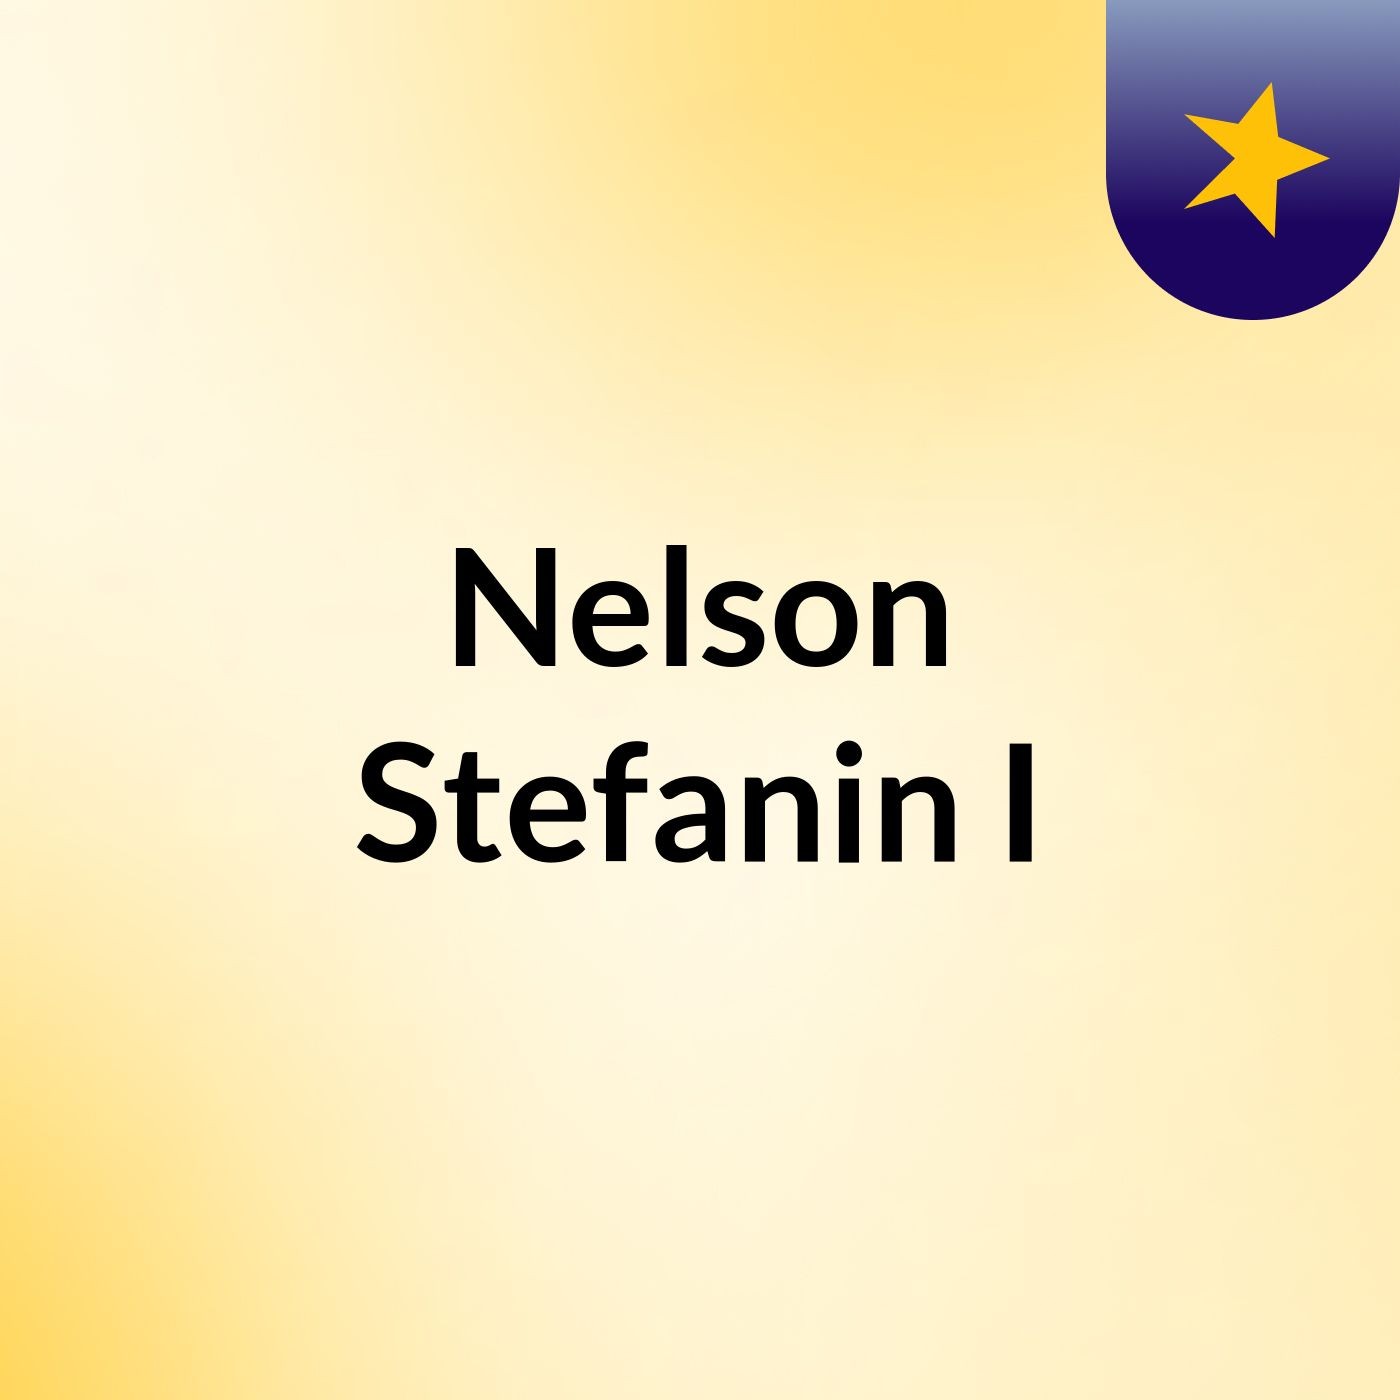 Nelson Stefanin I